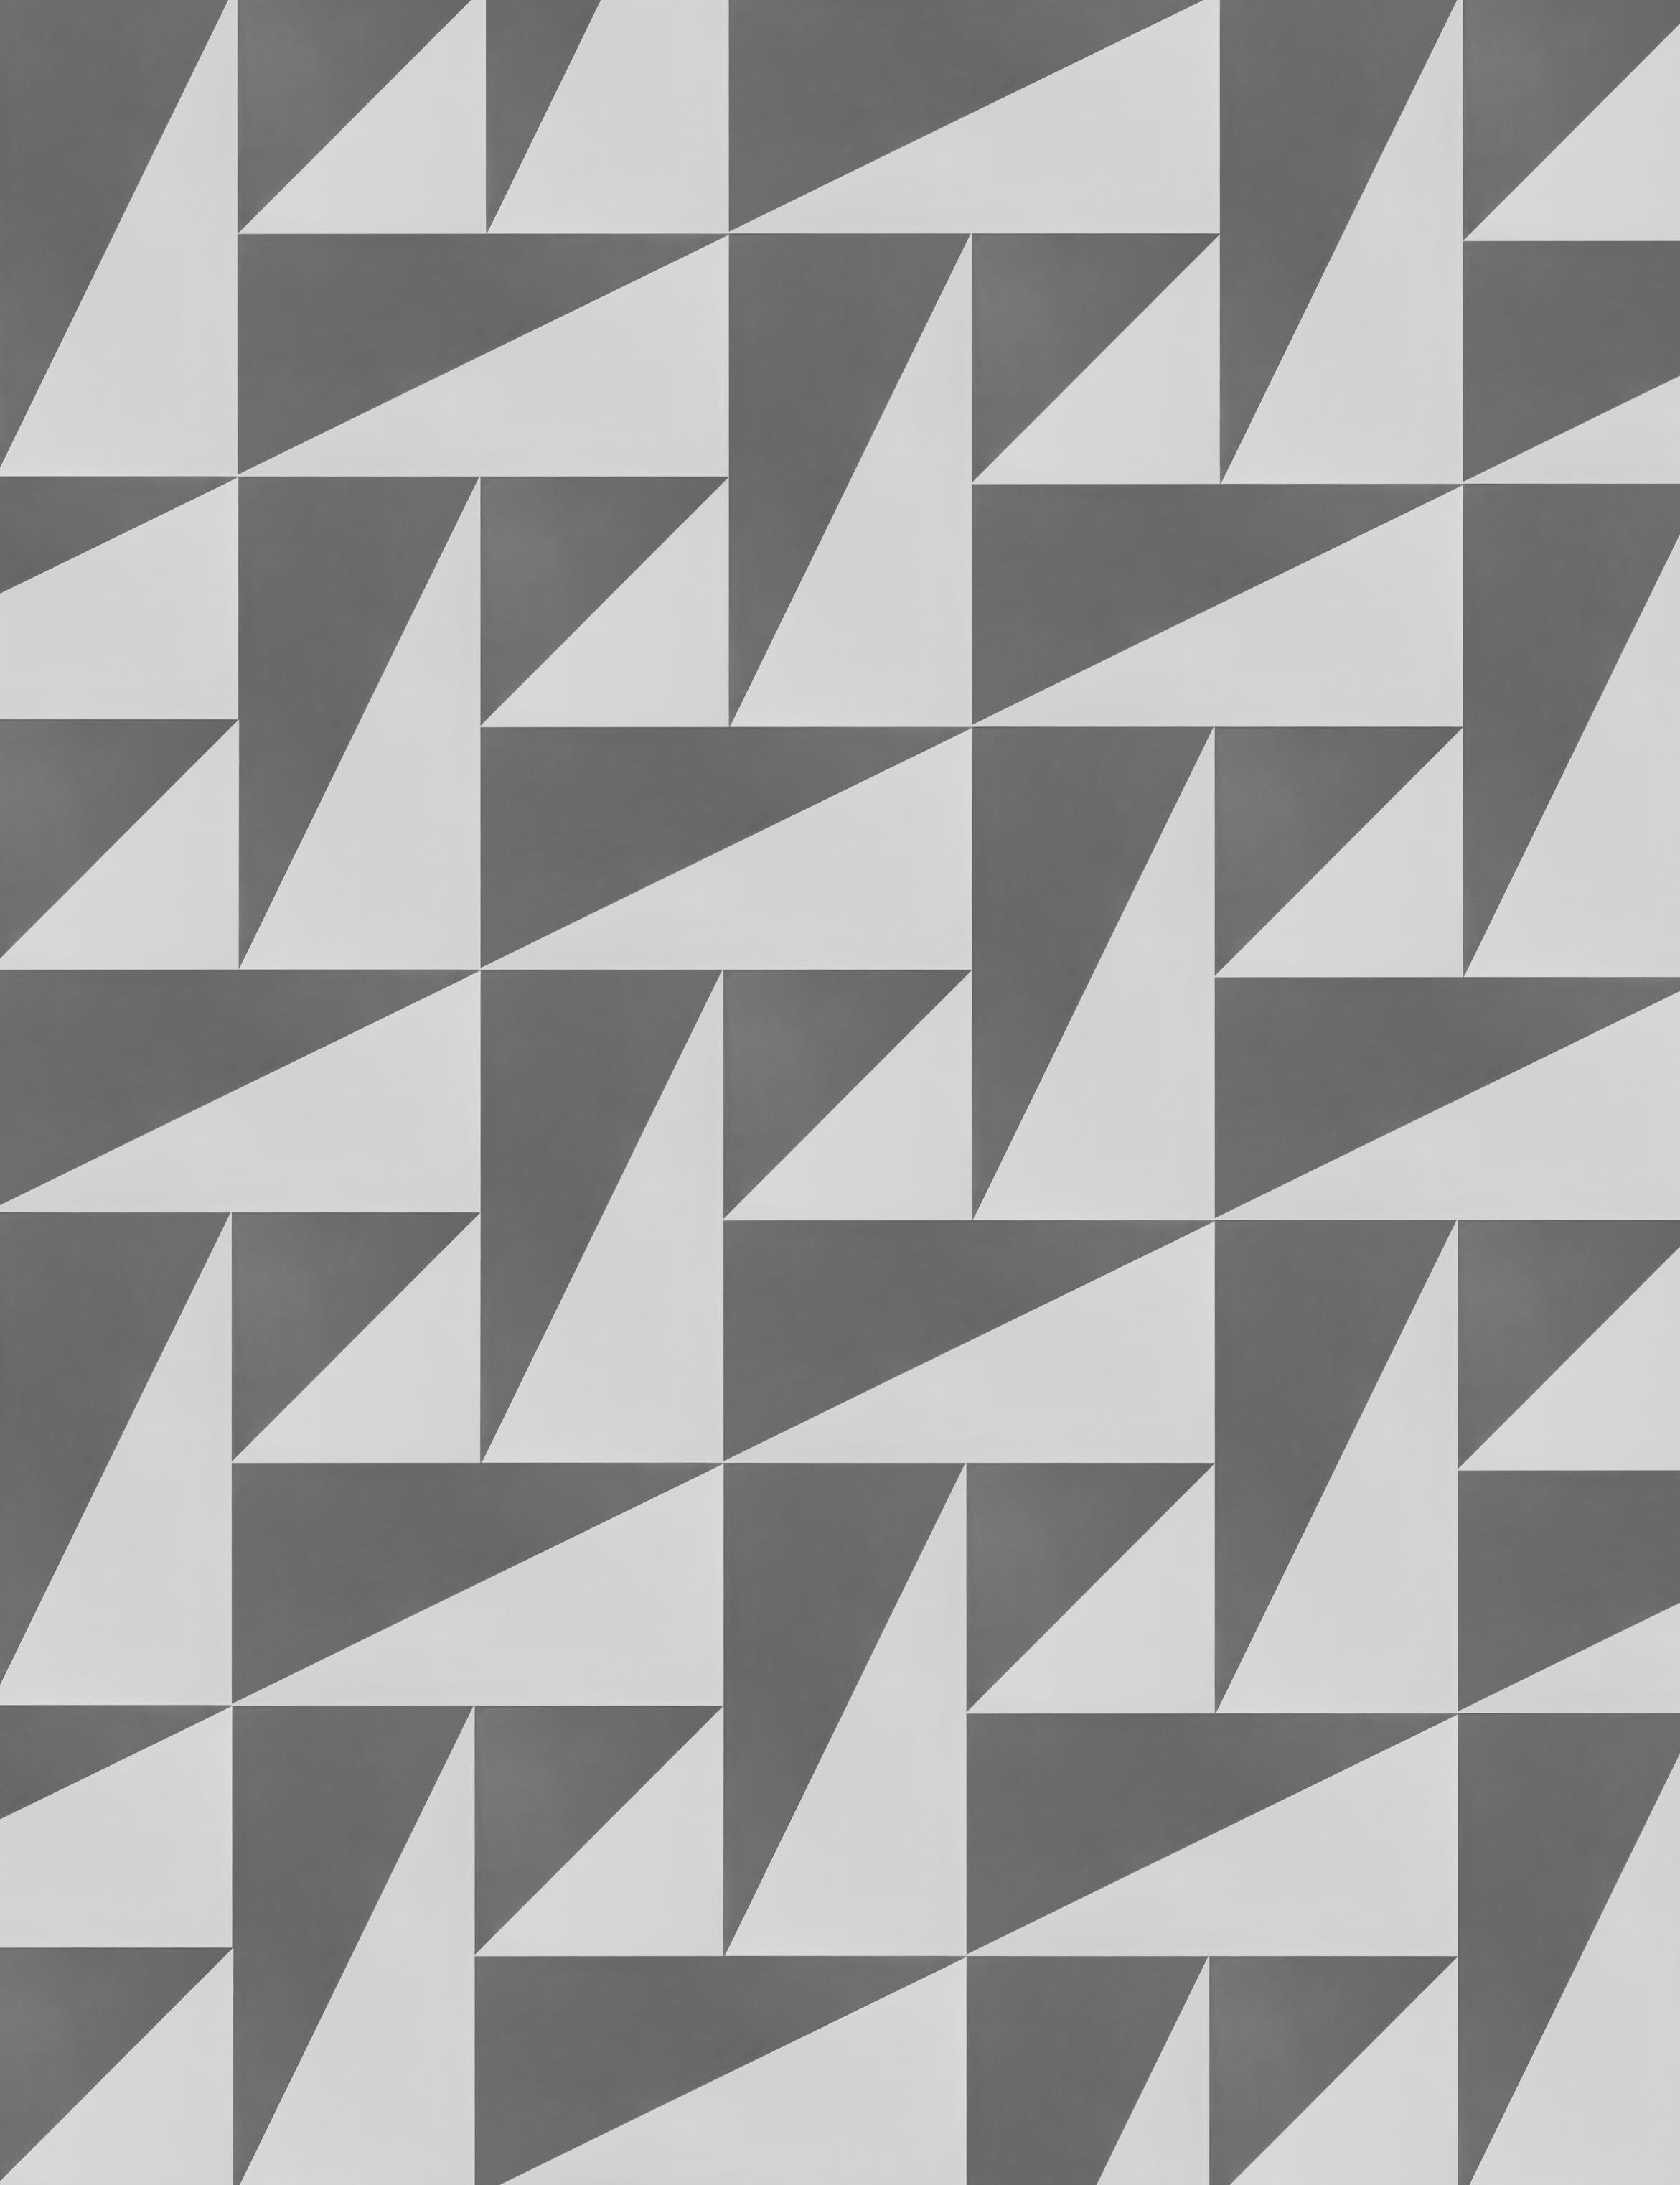 Es gibt zwei Möglichkeiten, ein Rechteck diagonal, von Ecke zu Ecke, in zwei Farben aufzuteilen: oben links/unten rechts oder unten links/oben rechts. Durch die Kombination und Anordnung dieser beiden Grundelemente können Sie zahlreiche auffällige